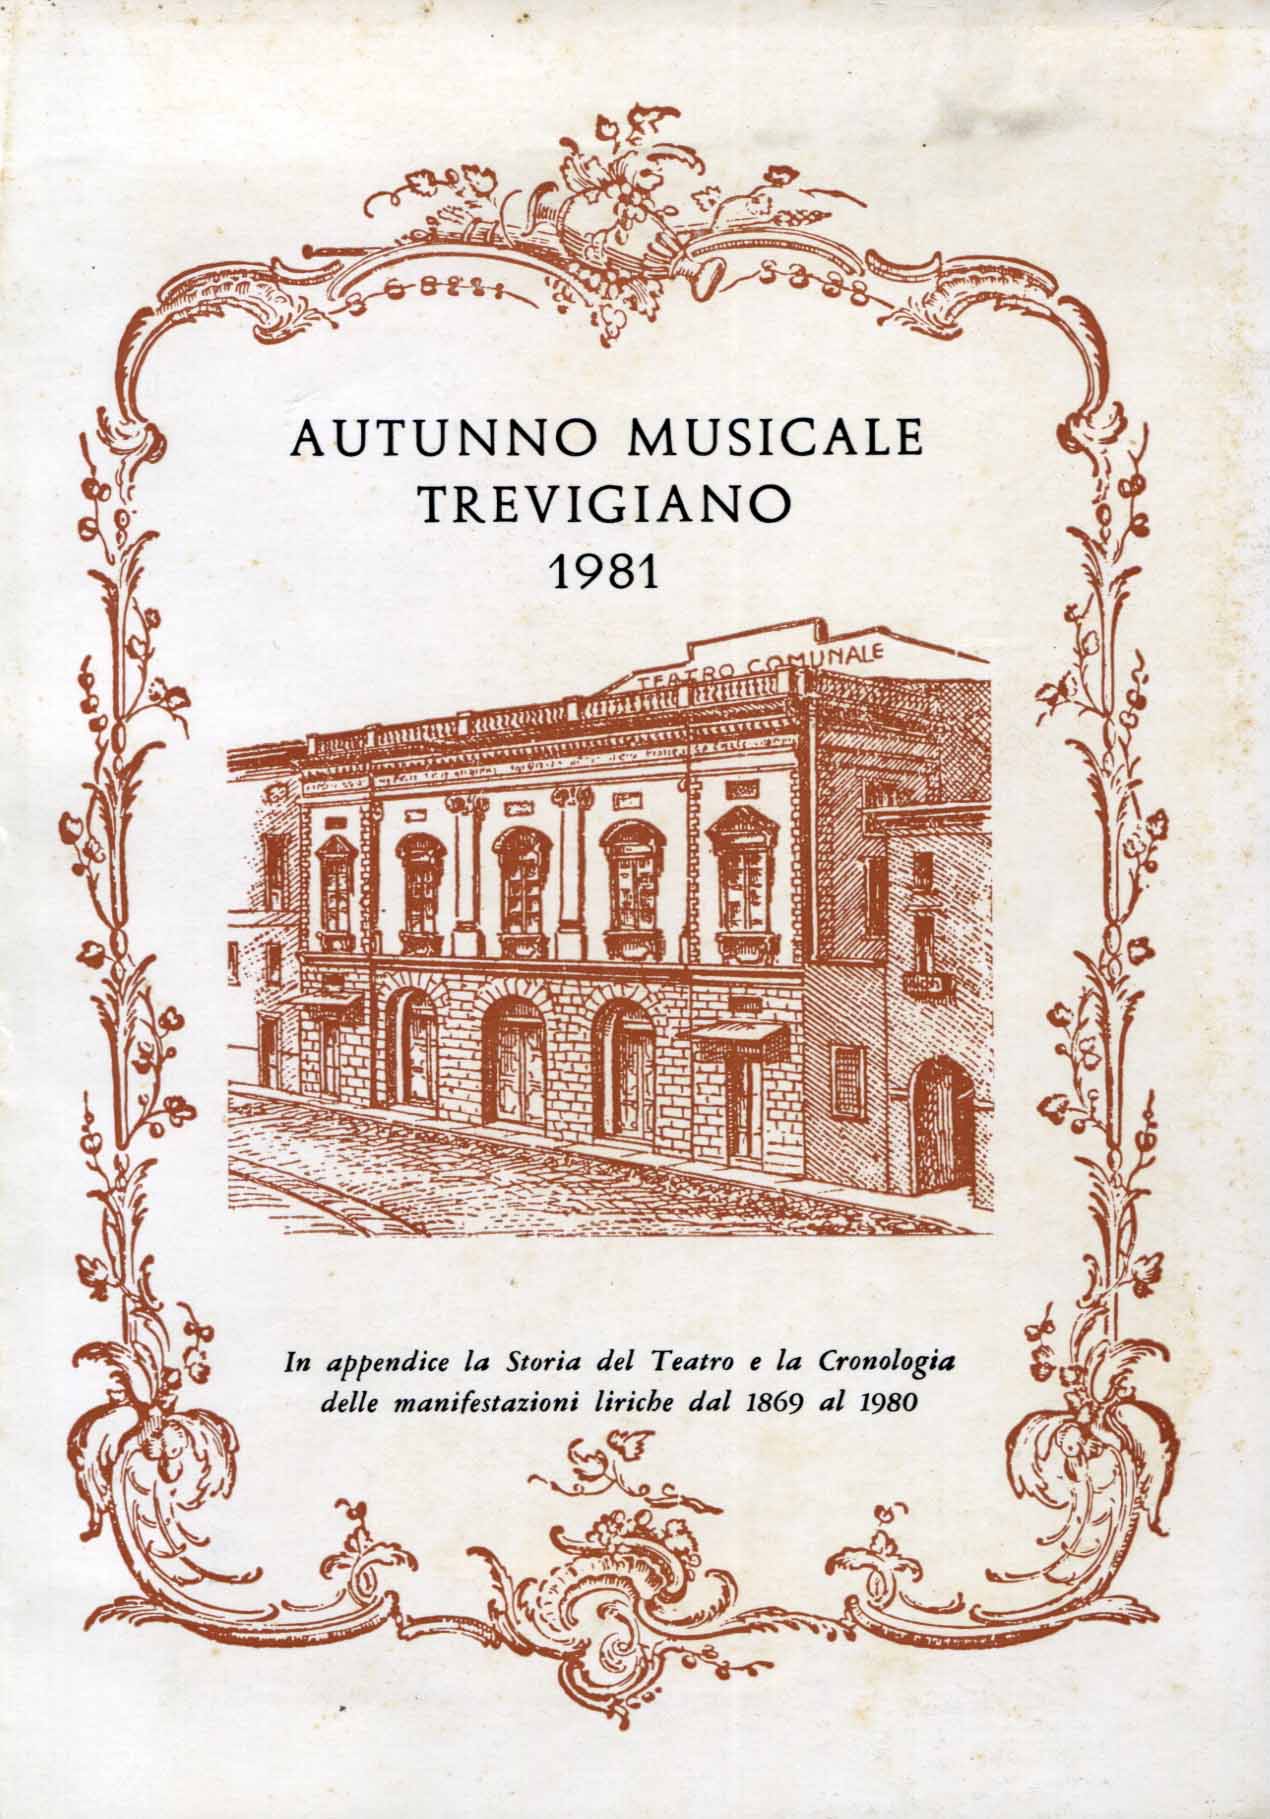 Autunno Musicale Trevigiano 1981. In appendice la Storia del Teatro e la Cronologia delle manifestazioni liriche dal 1869 al 1980